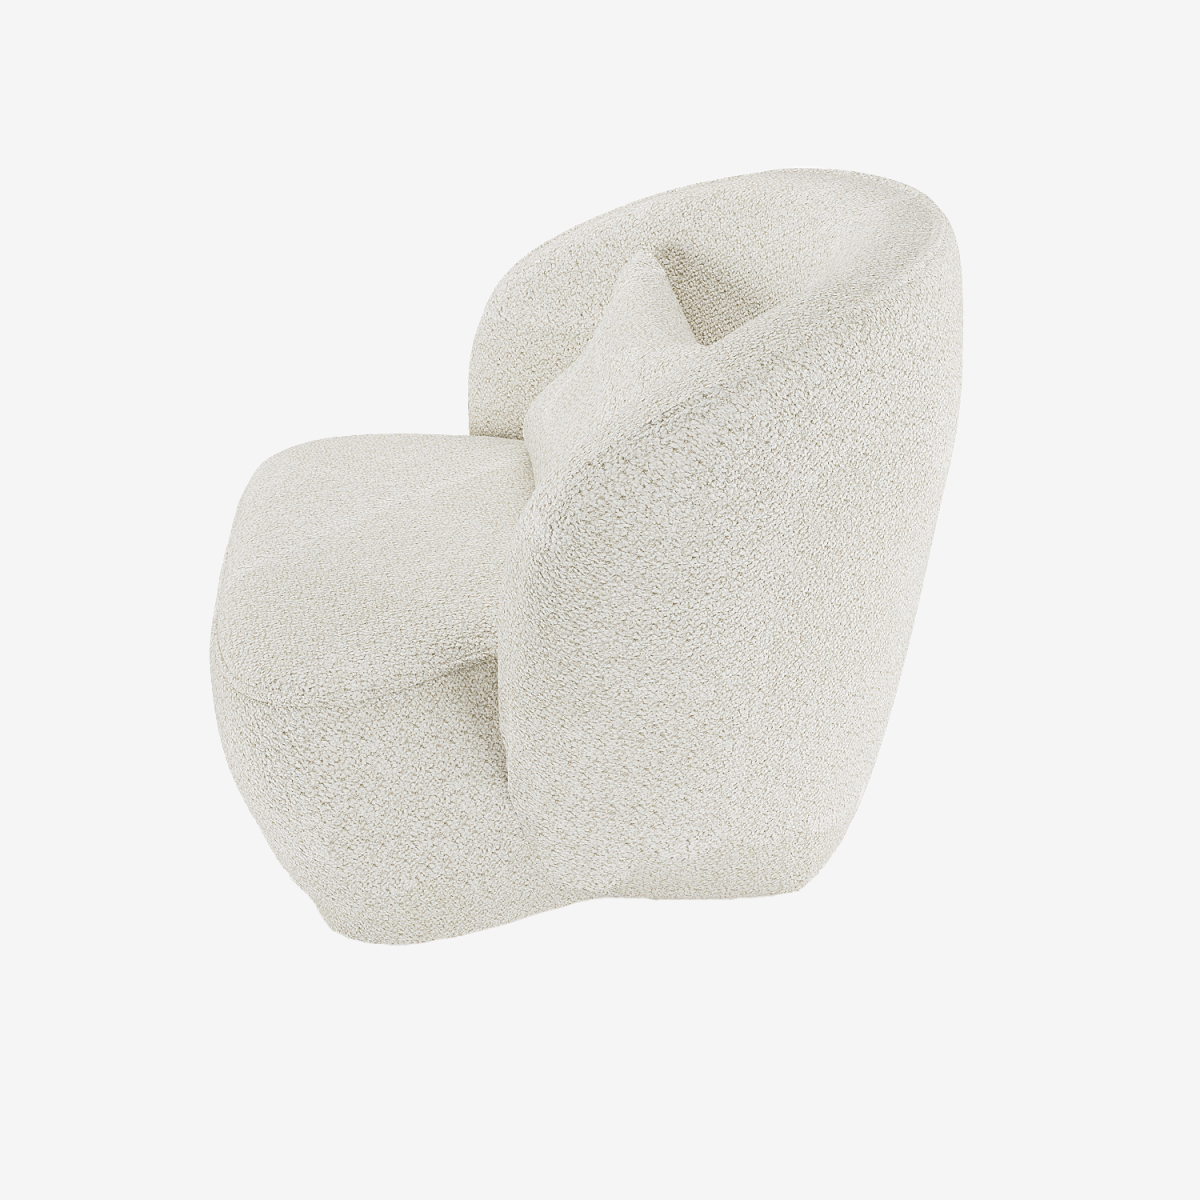 Fauteuil scandinave tissu bouclé blanc Pablo - Potiron Paris, déco et meuble contemporain design pas cher